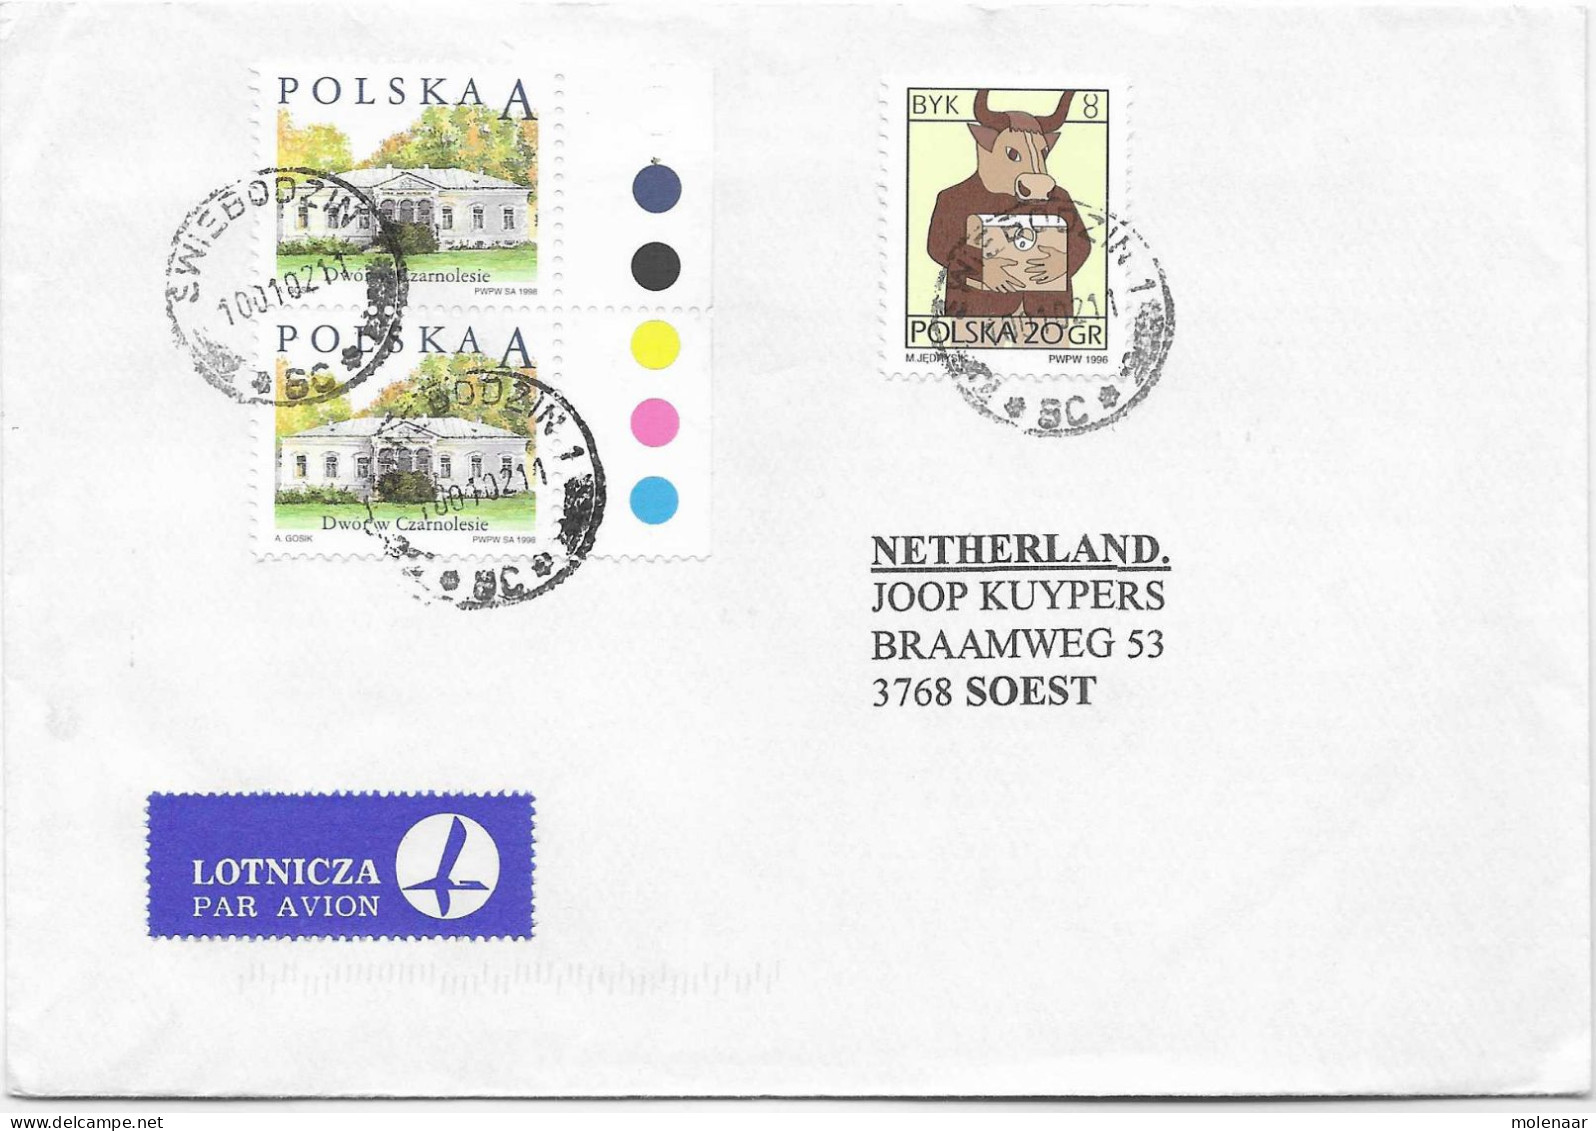 Postzegels > Europa > Polen > 1944-.... Republiek > 2001-10 > Brief Uit 2002 Met 3 Postzegels (17128) - Covers & Documents